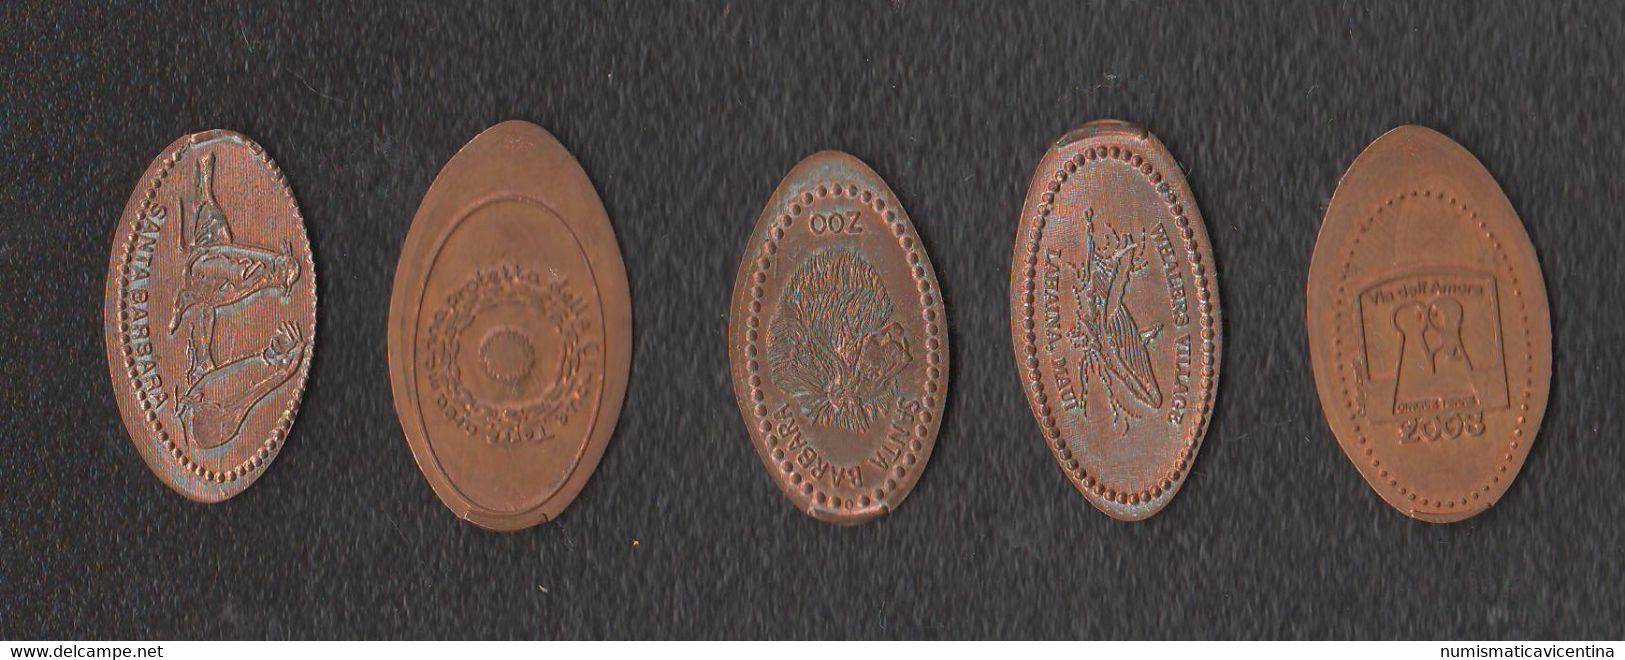 4 Monete Allungate SOUVENIR TOKEN ITALIA Penny Souvenirs Zoo Santa Barbara - La Via Dell'Amore - Cinque Terre Gettoni - Monete Allungate (penny Souvenirs)